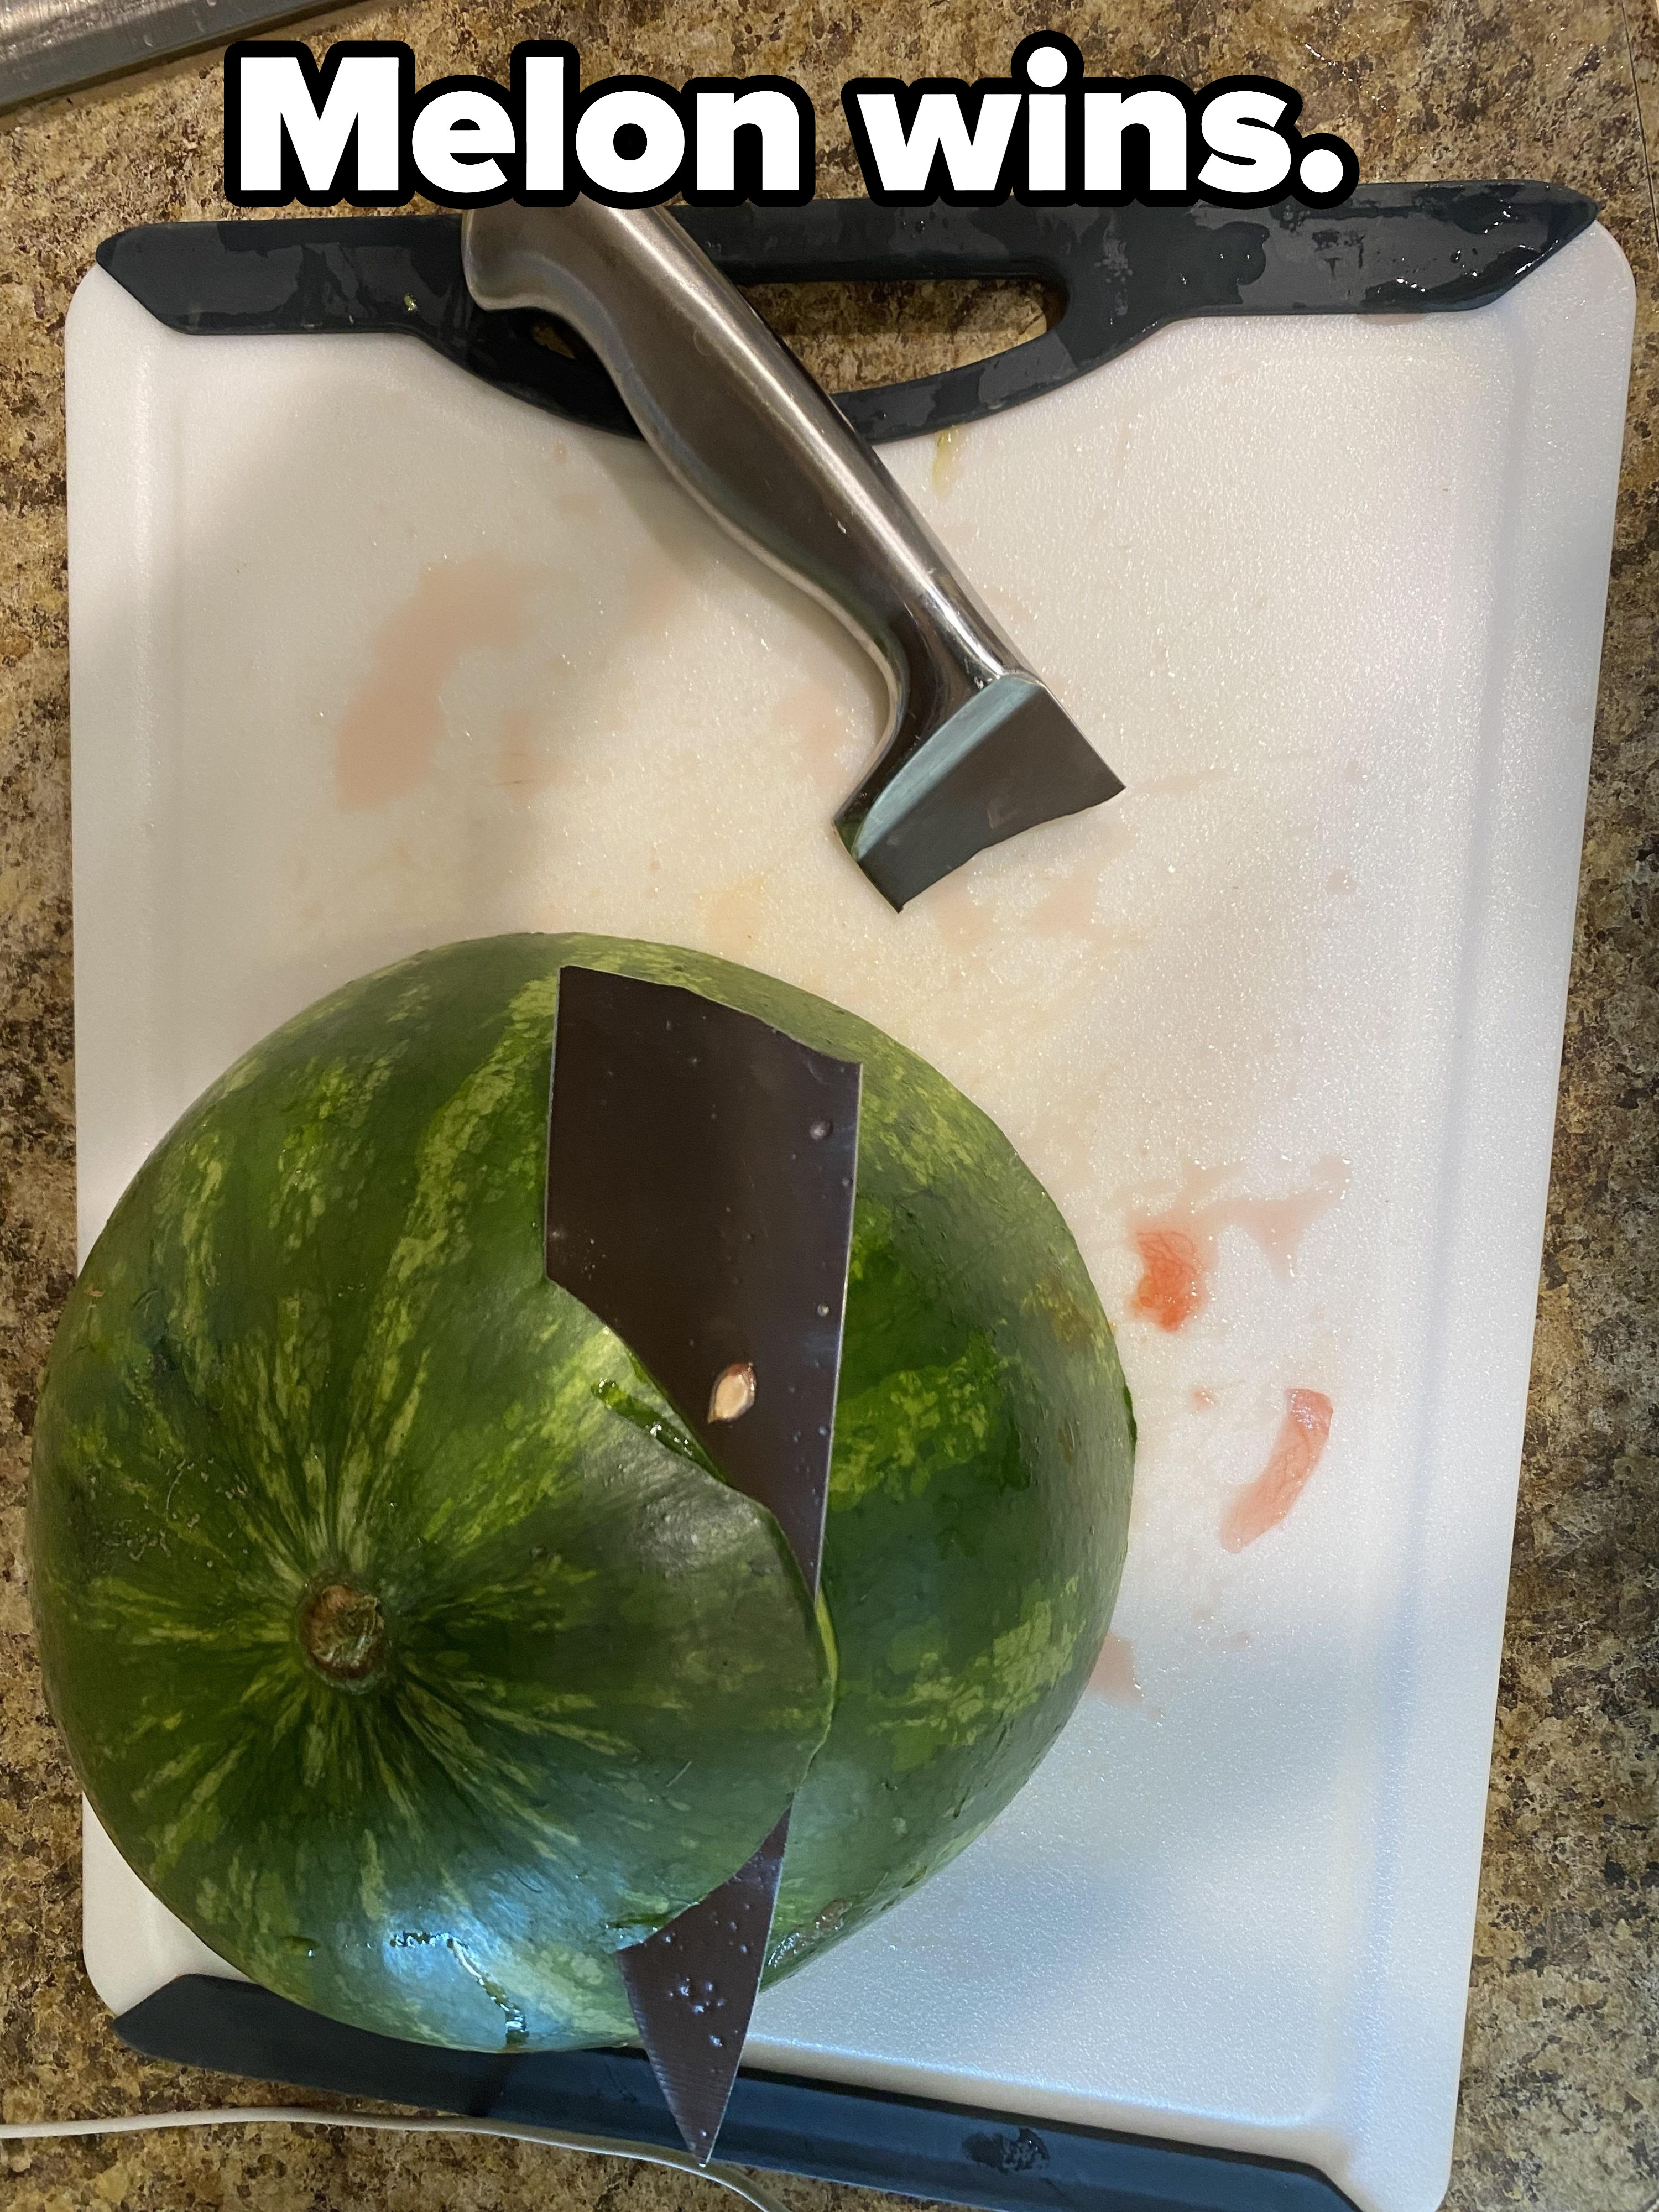 A broken knife in a watermelon